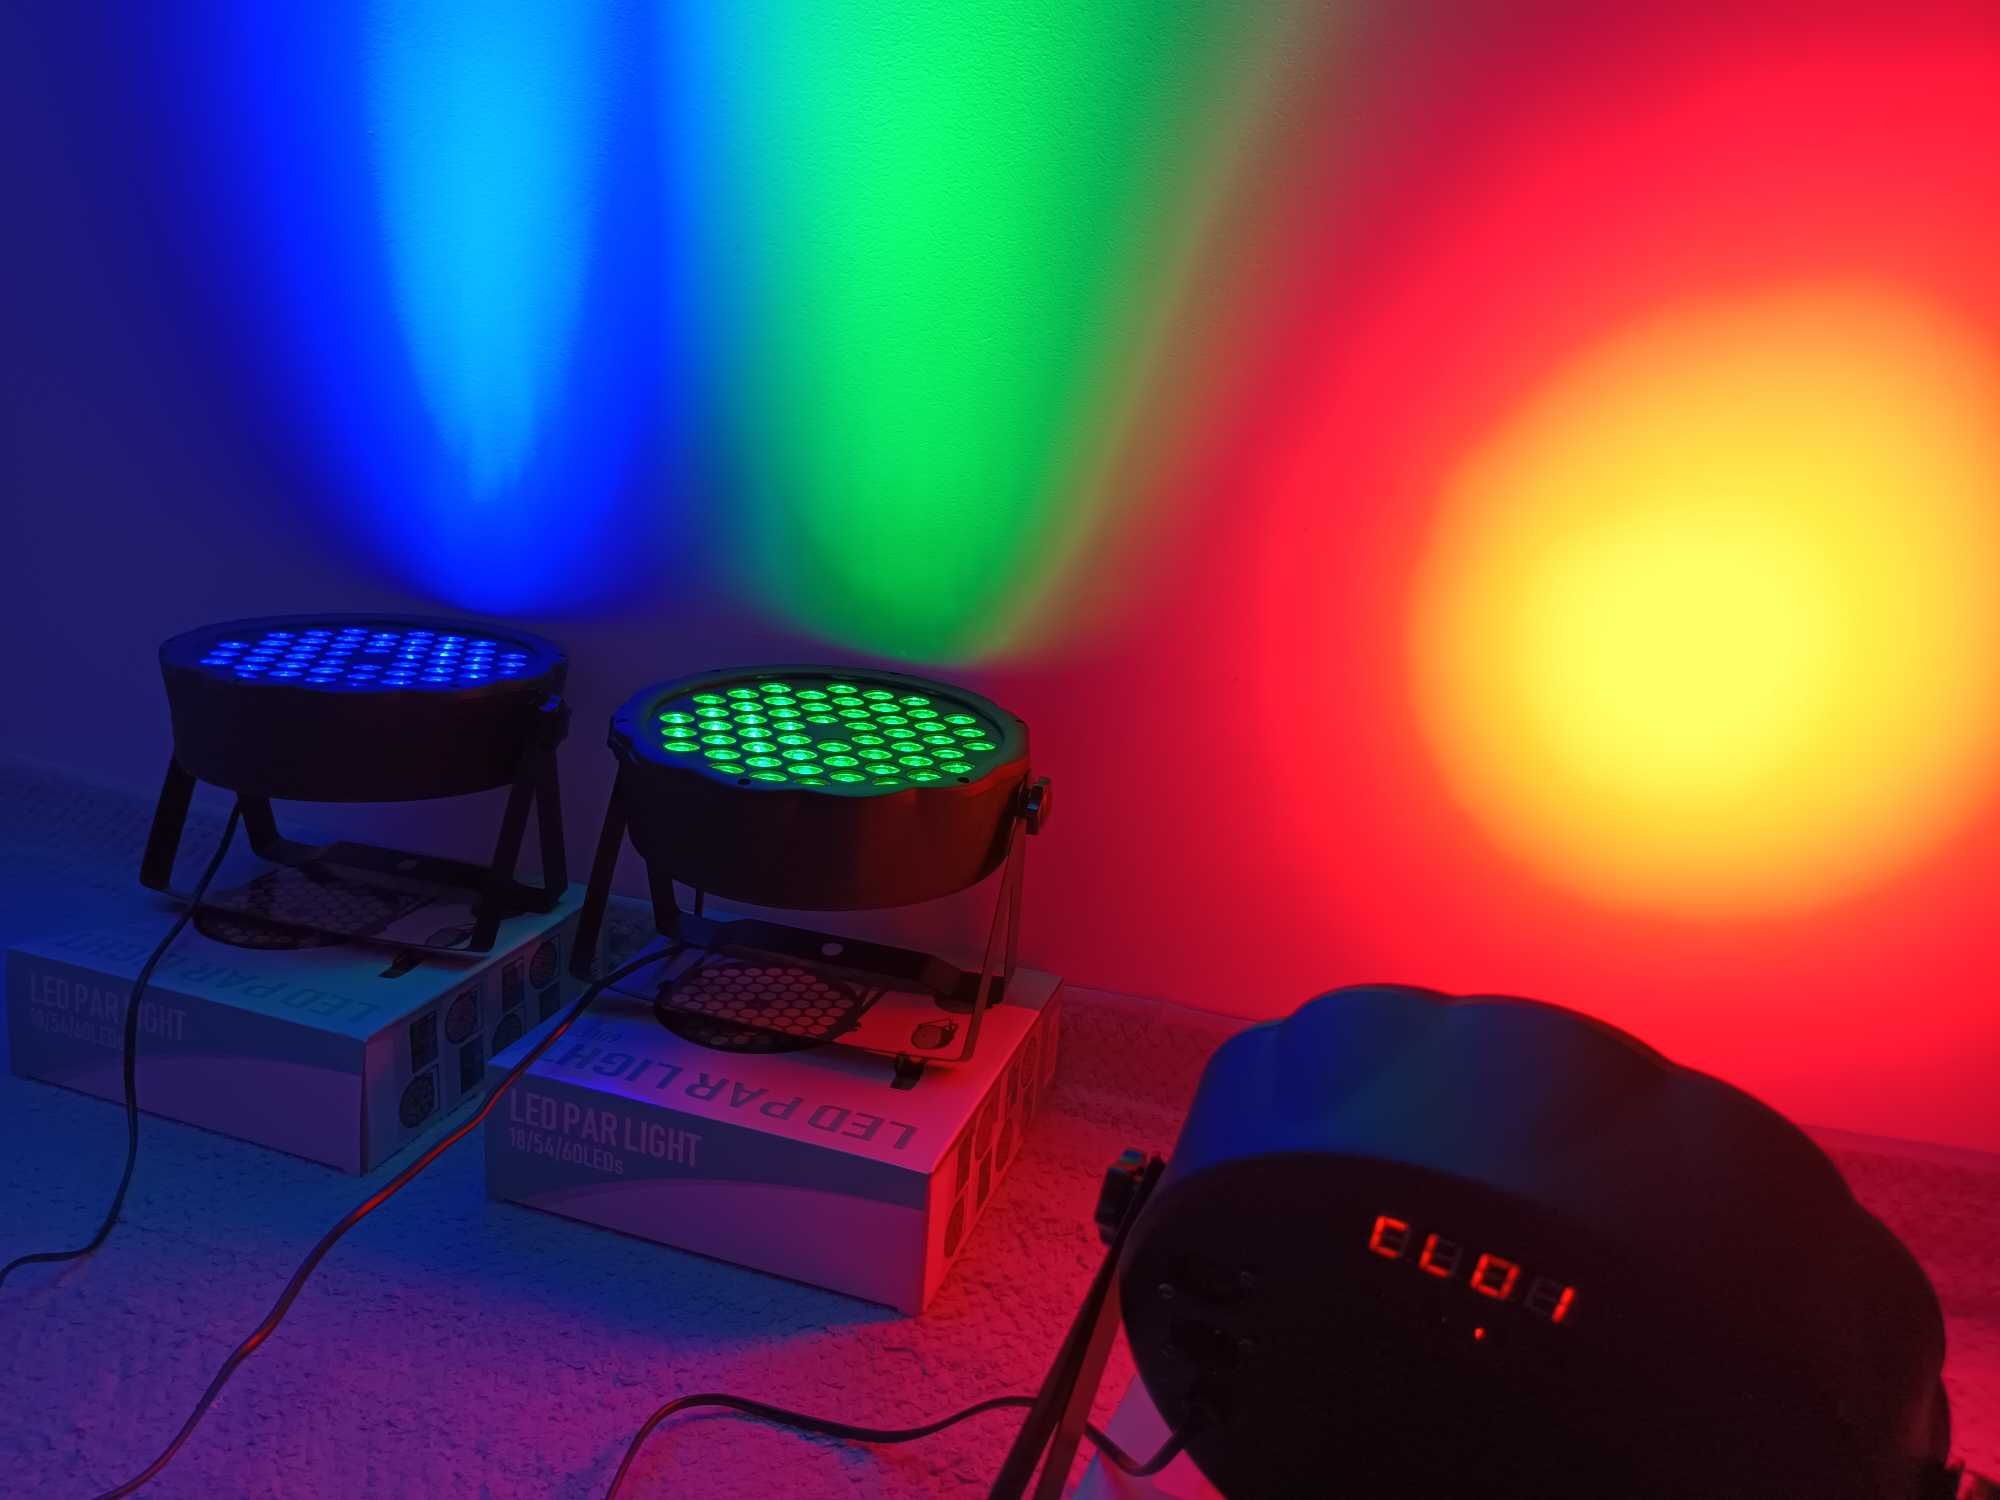 Lumini Disco 54 LED uri/Joc de culori majorat/Microfon integrat